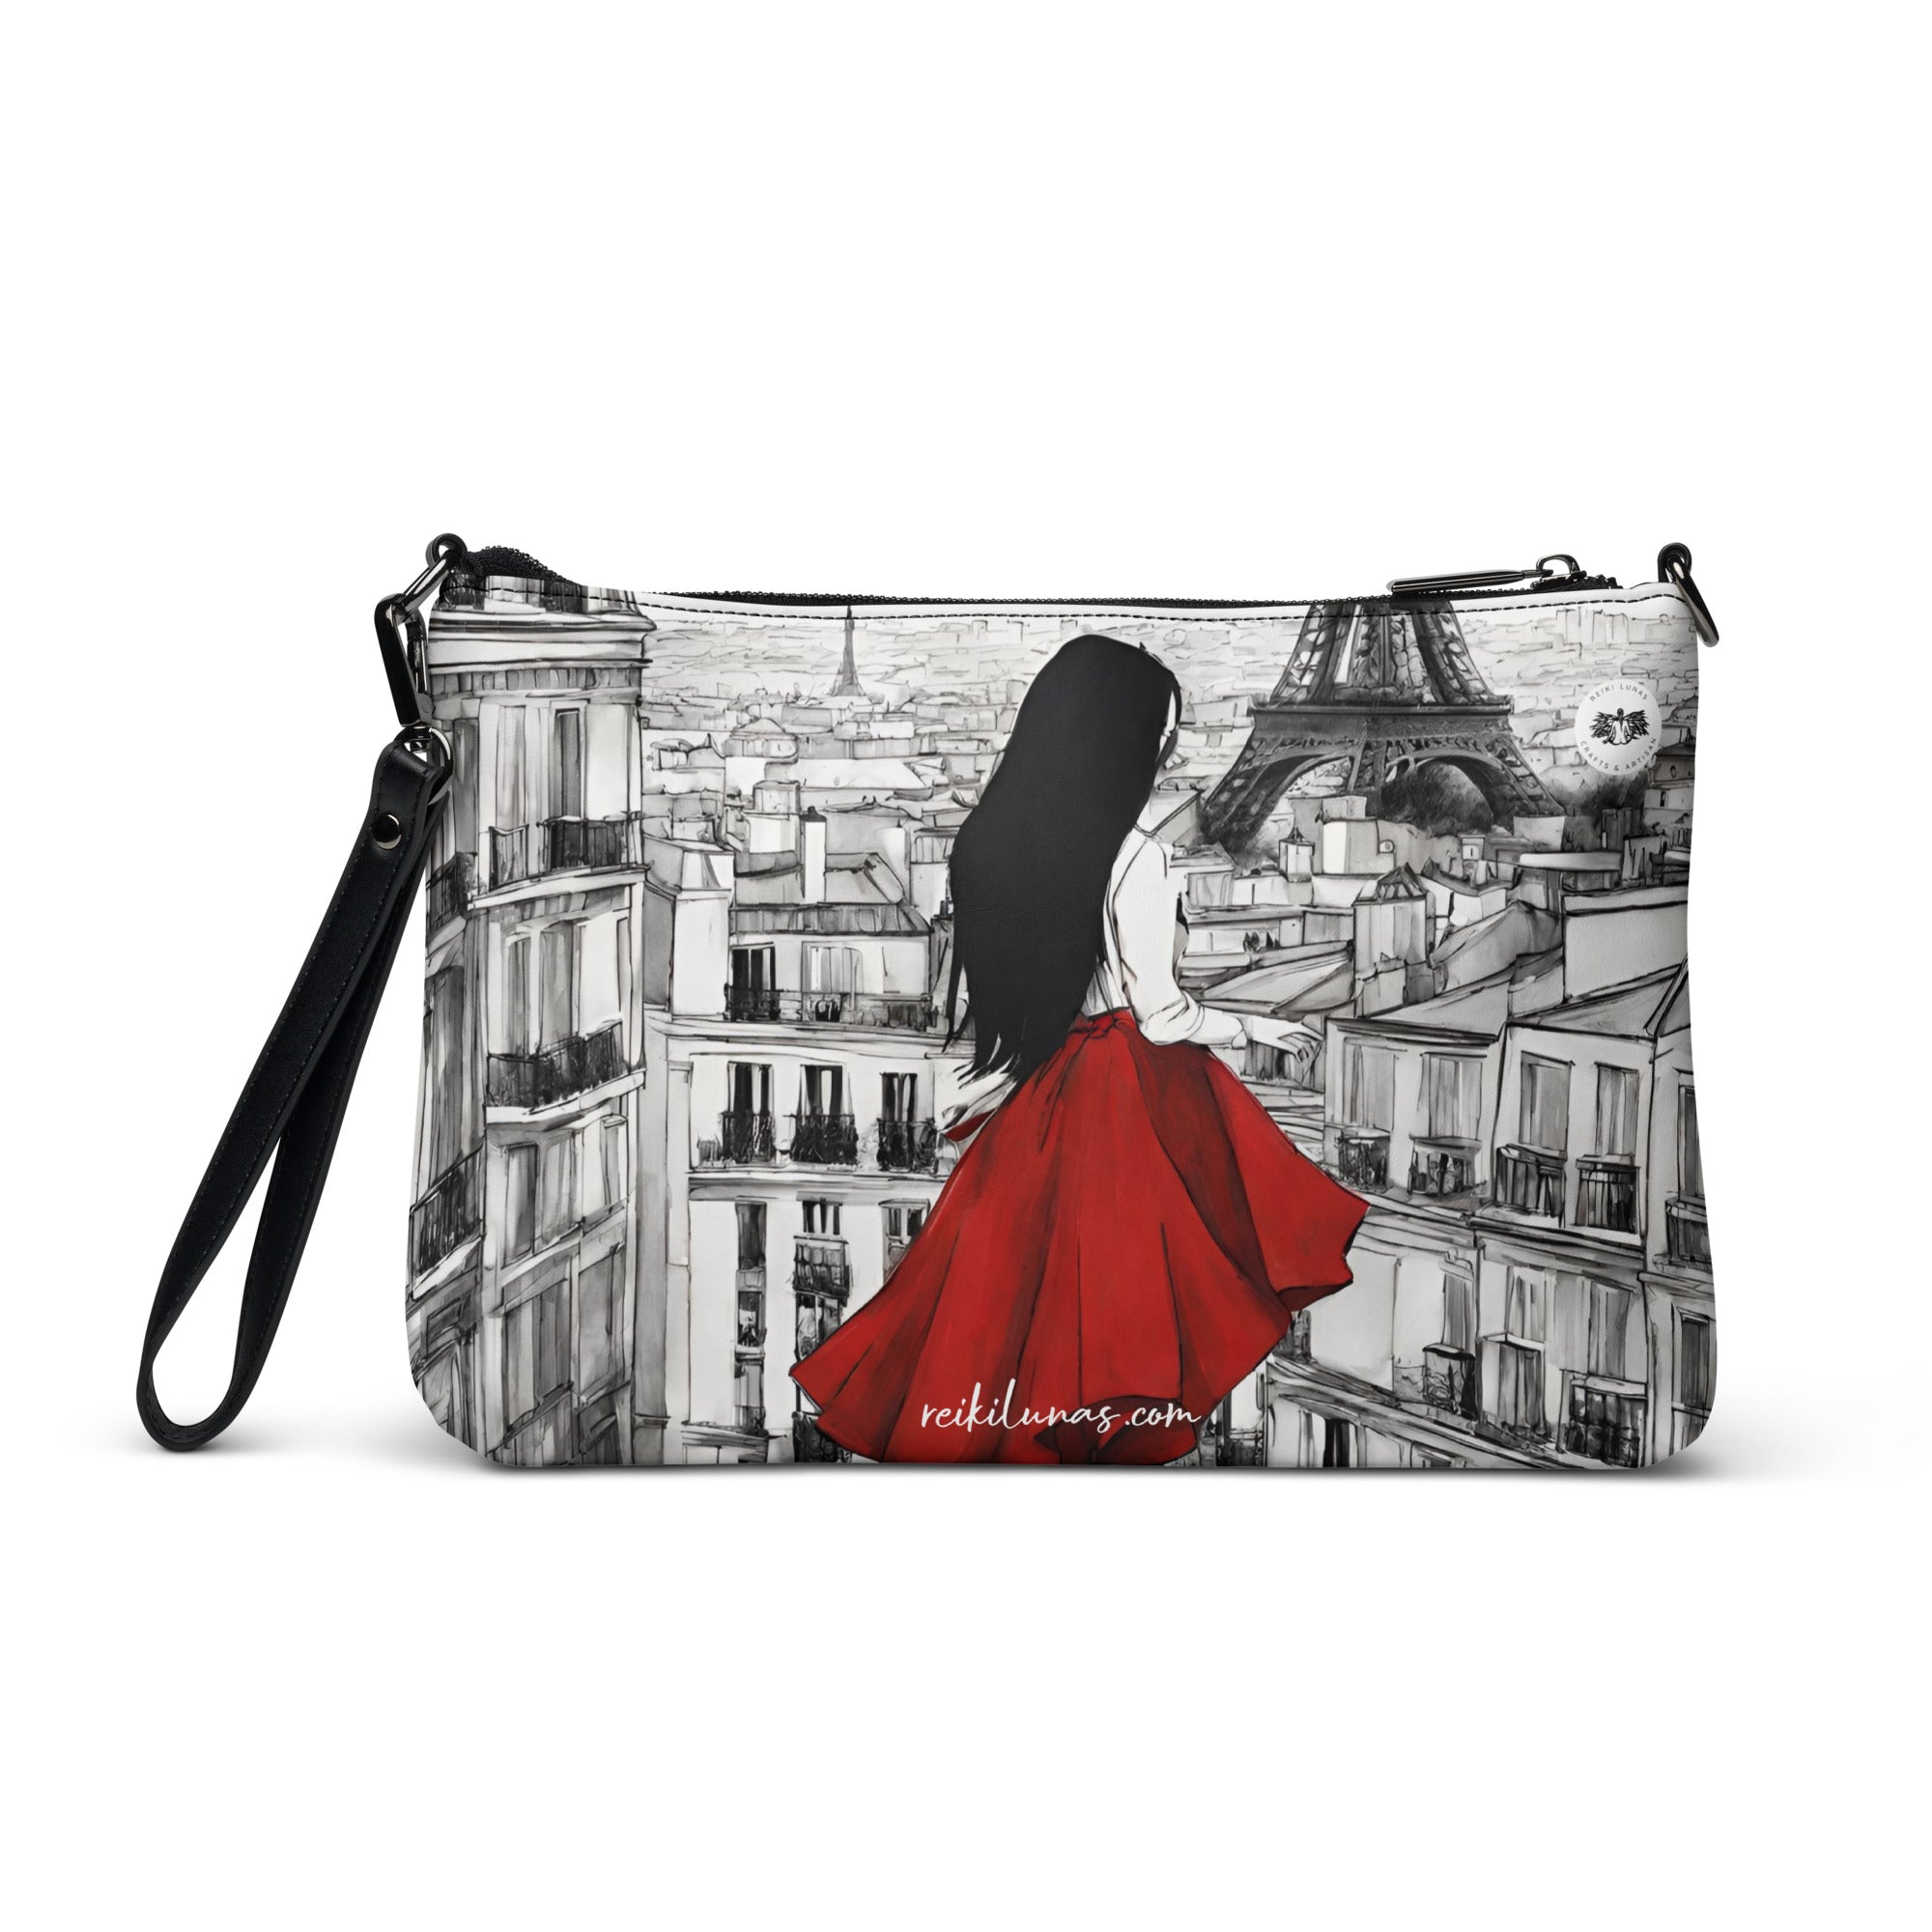 She is Paris Crossbody bag- Red - REIKI LUNAS, CRAFTS & ARTISAN